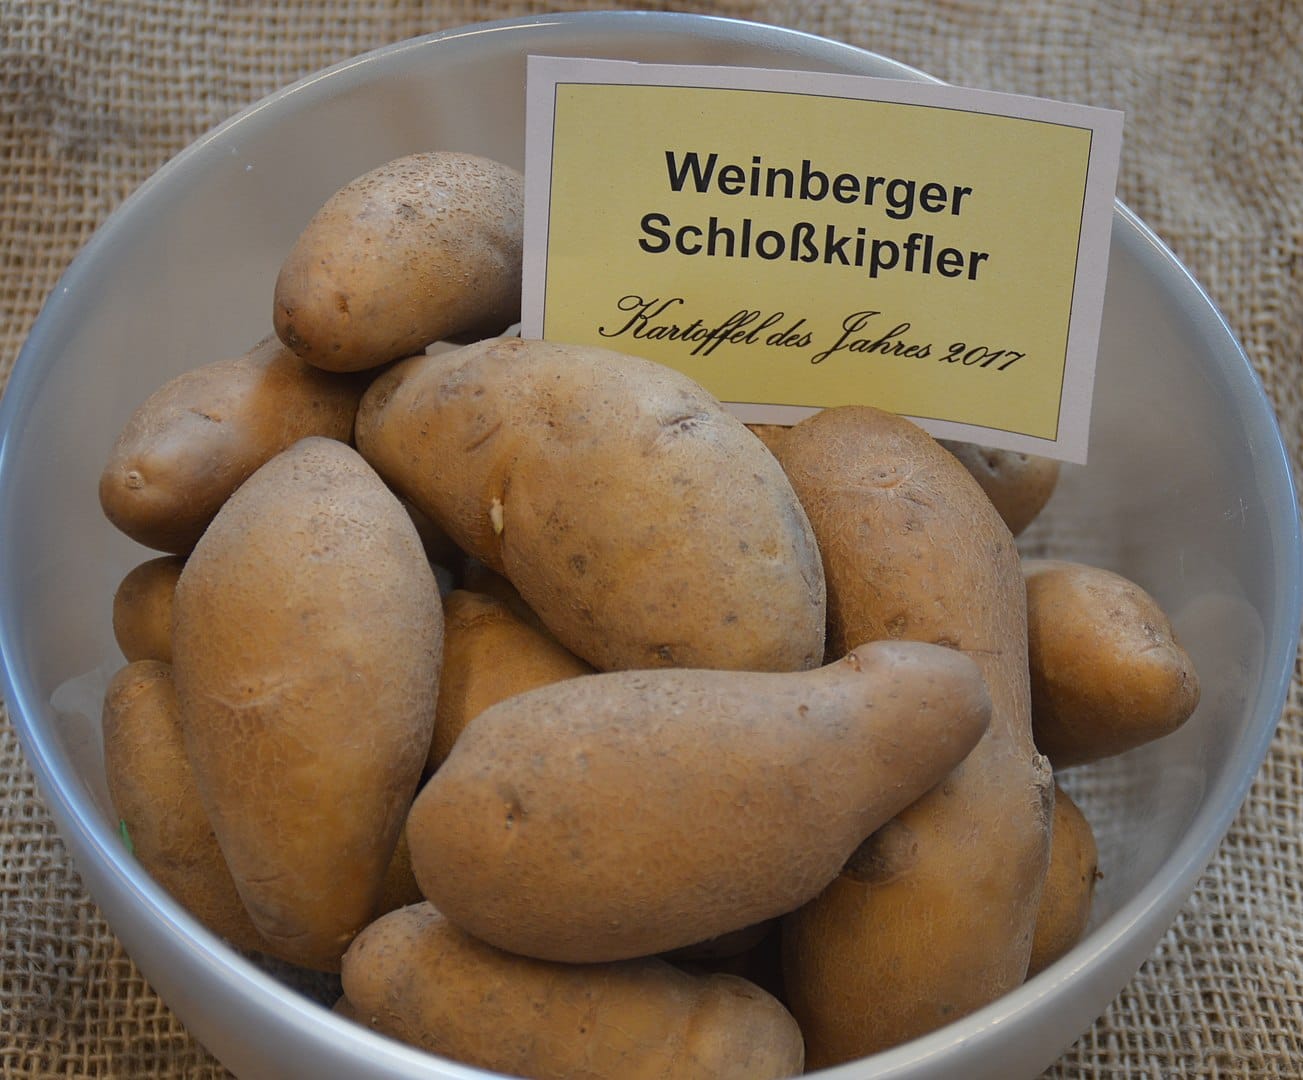 Kartoffel des Jahres 2017: "Weinberger Schloßkipfler"